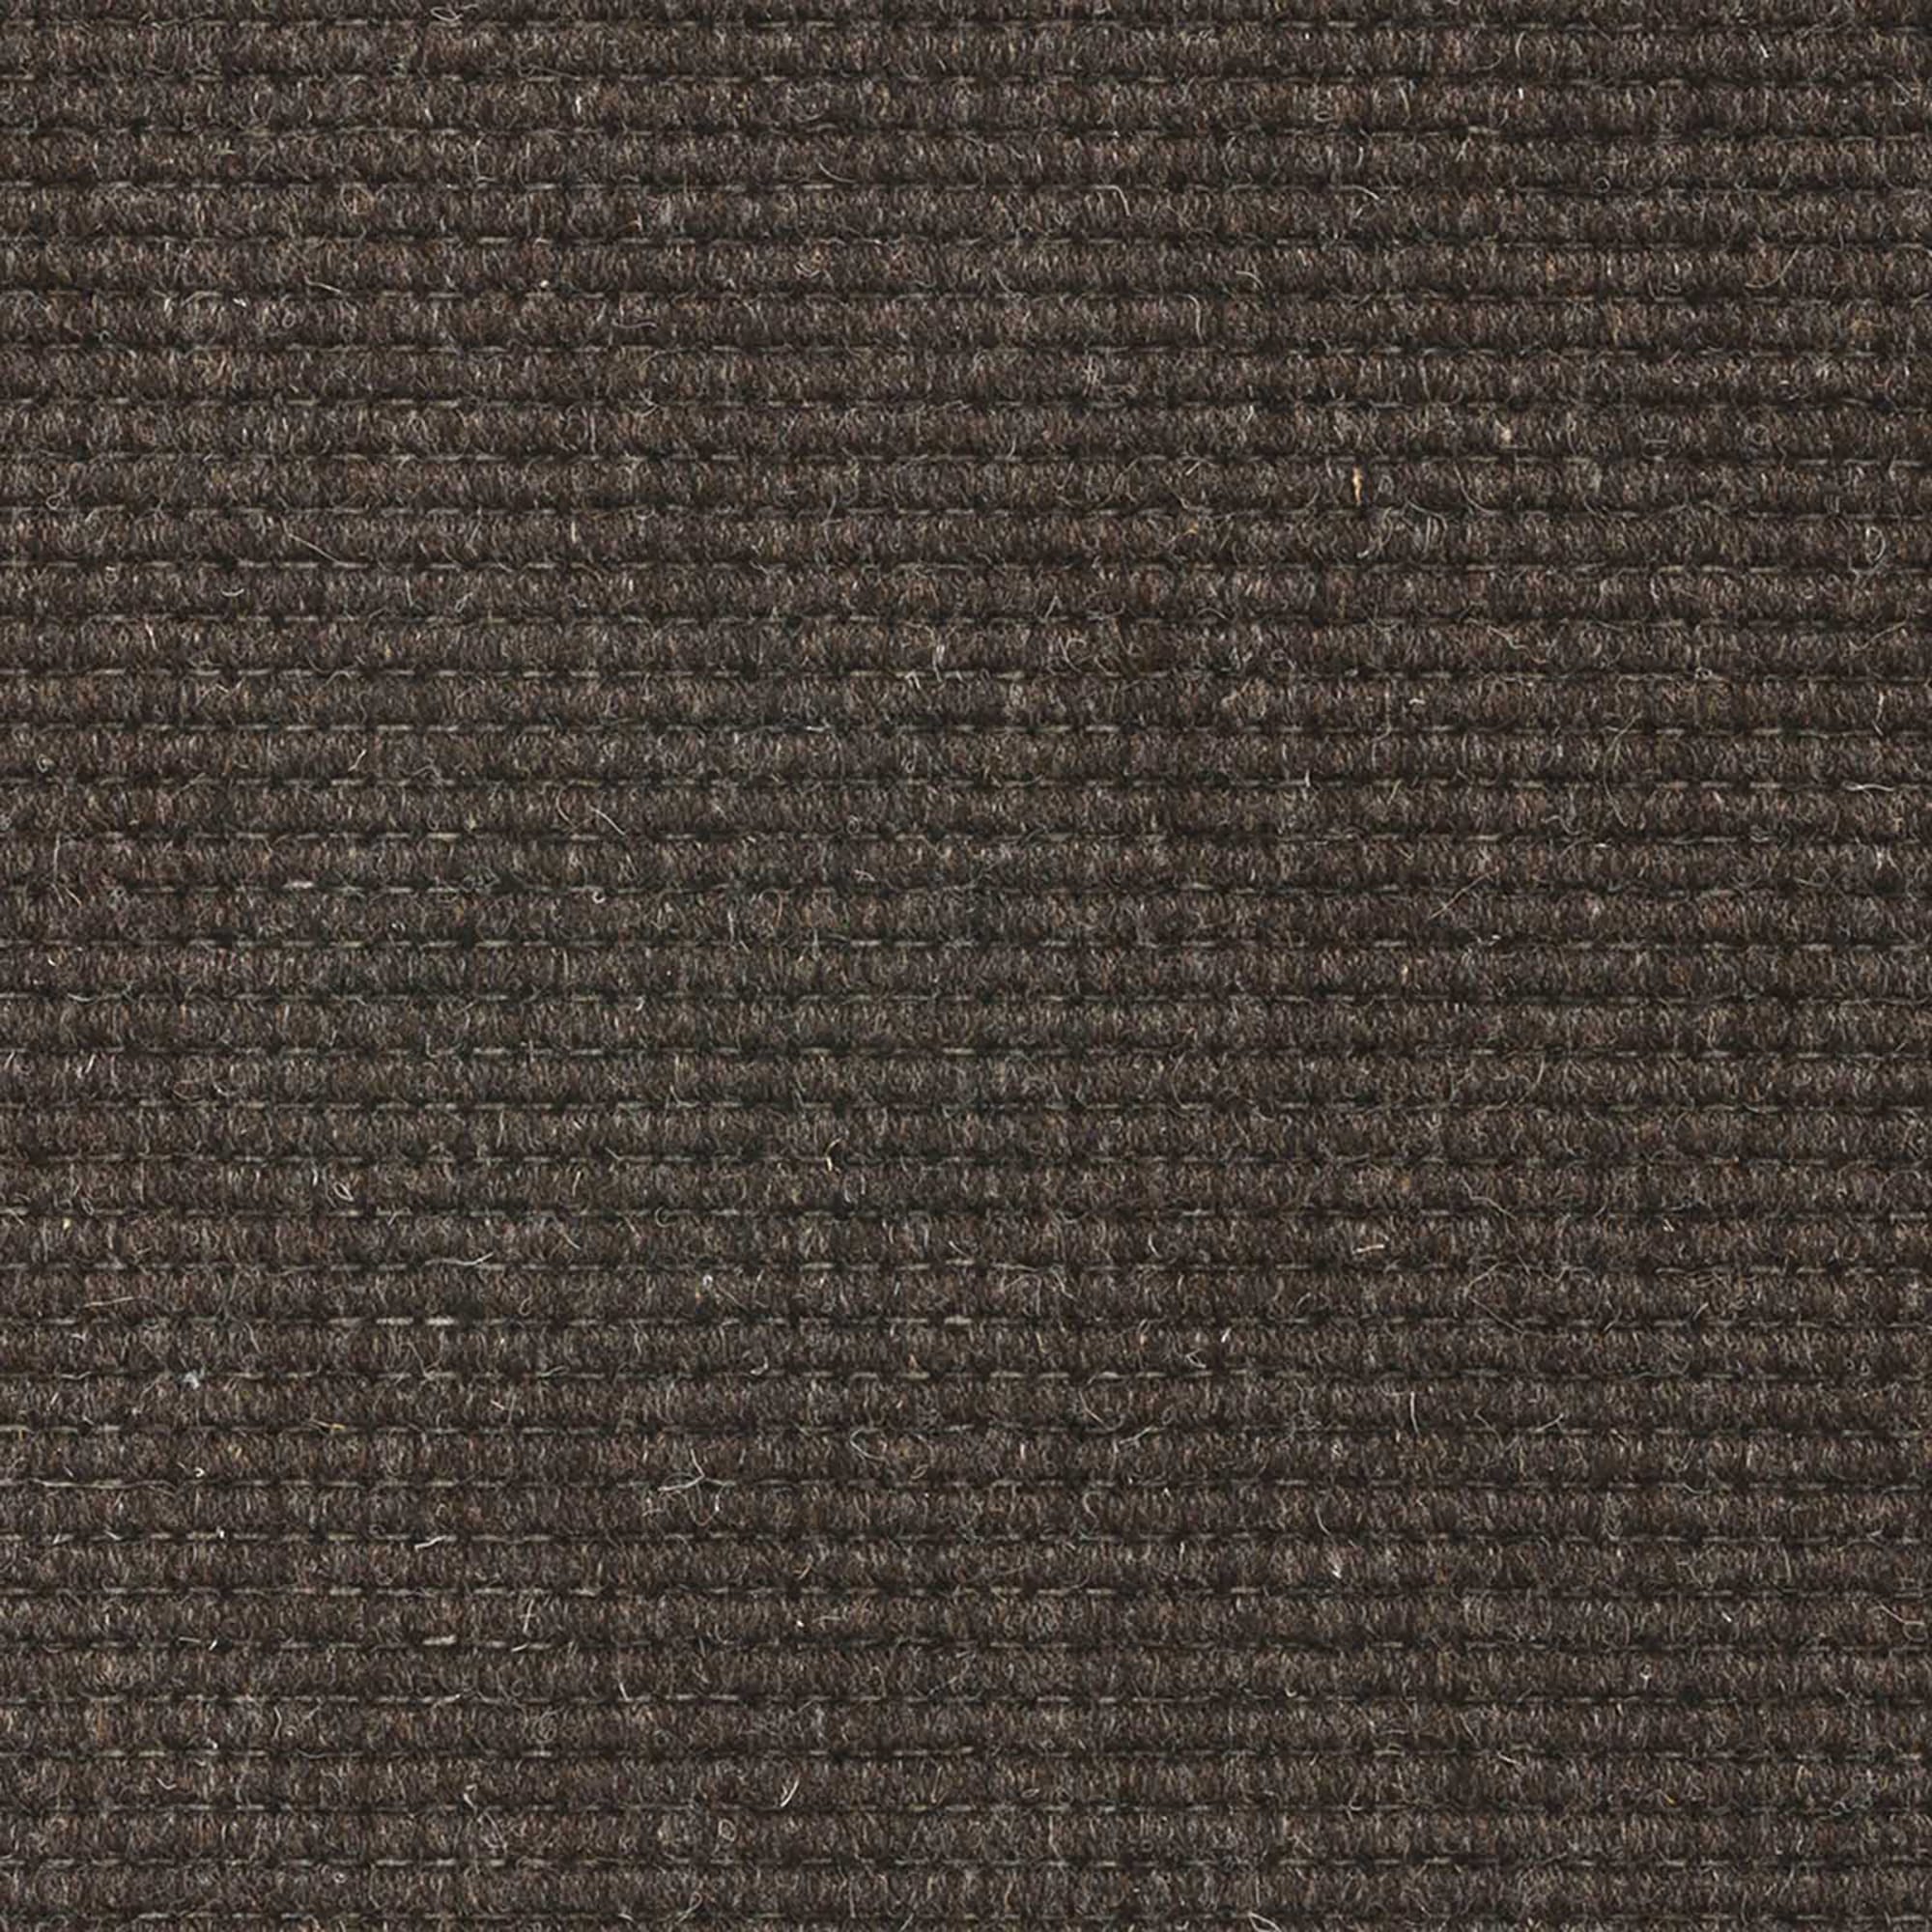 ウールカーペット ダークブラウン FL-OT006-03-G219 羊毛そのままの色です